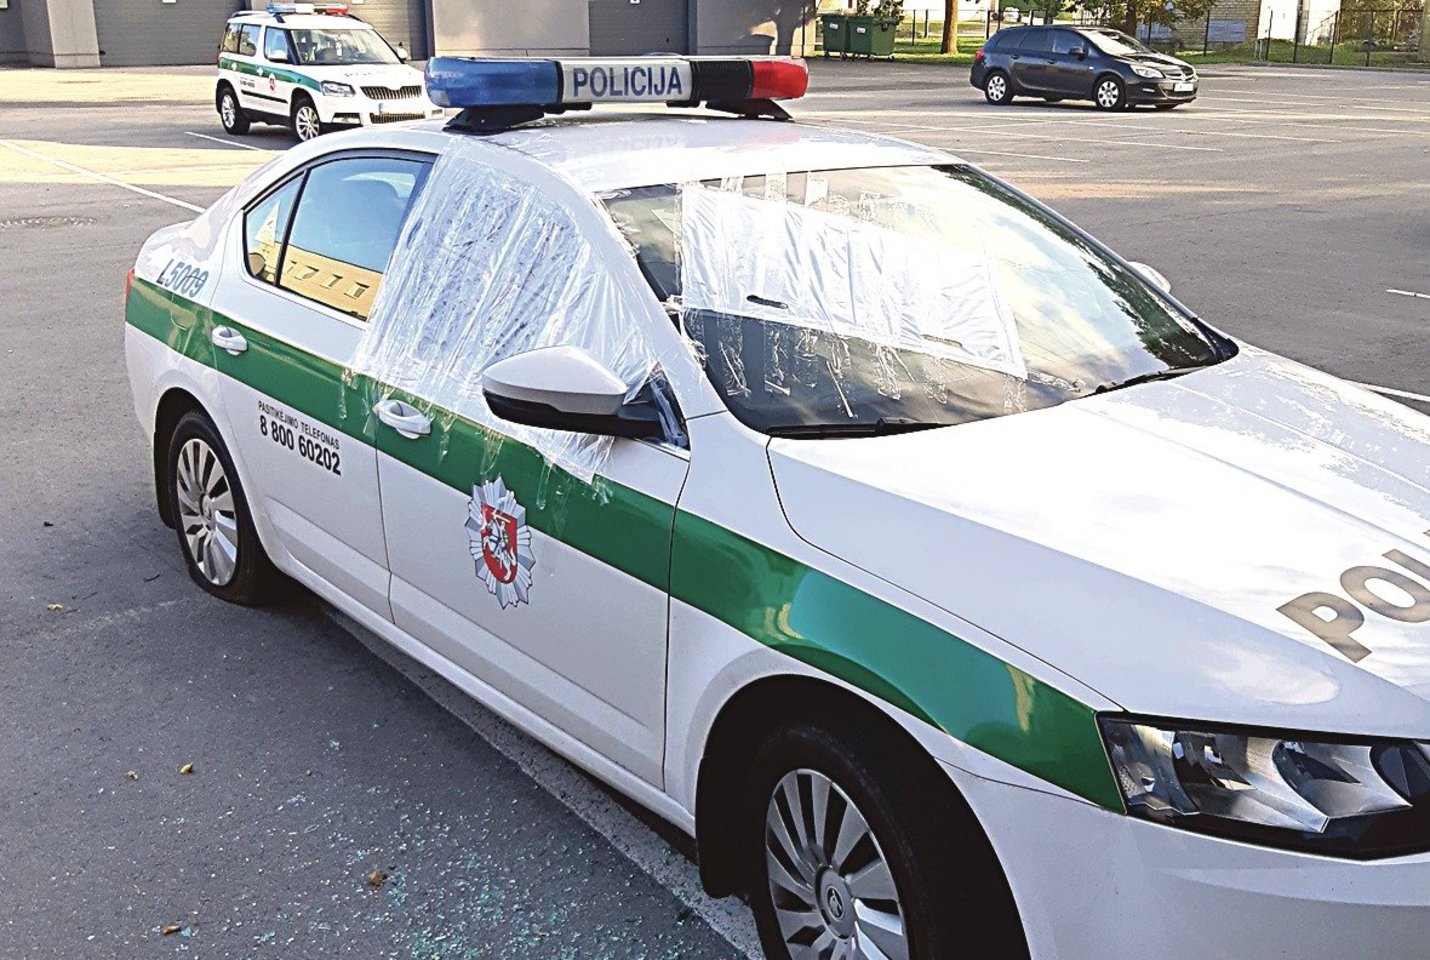 Taip Palangos policininkų automobilis atrodė po kretingiškio atakos.